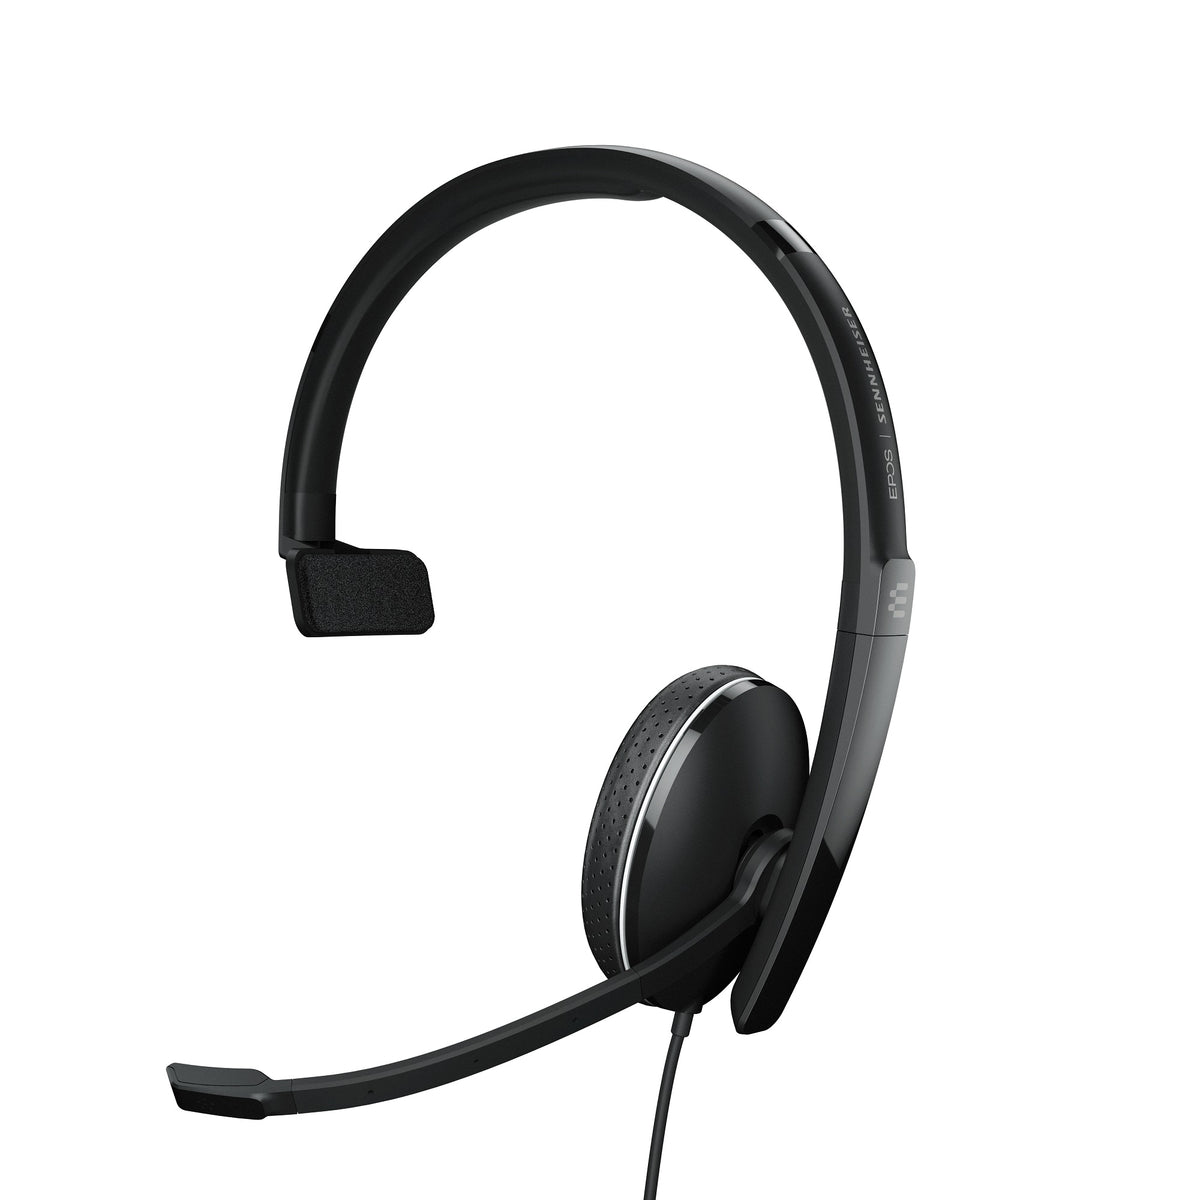 Headset EPOS SENNHEISER ADAPT 135T USB II Mono Black Headphones